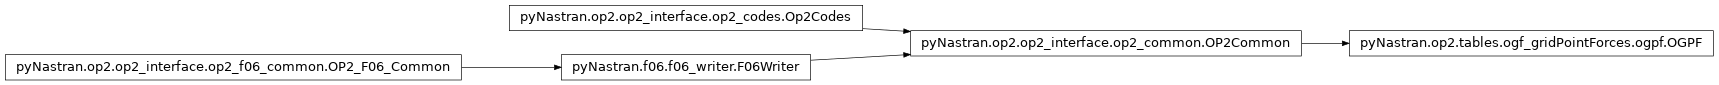 Inheritance diagram of pyNastran.op2.tables.ogf_gridPointForces.ogpf